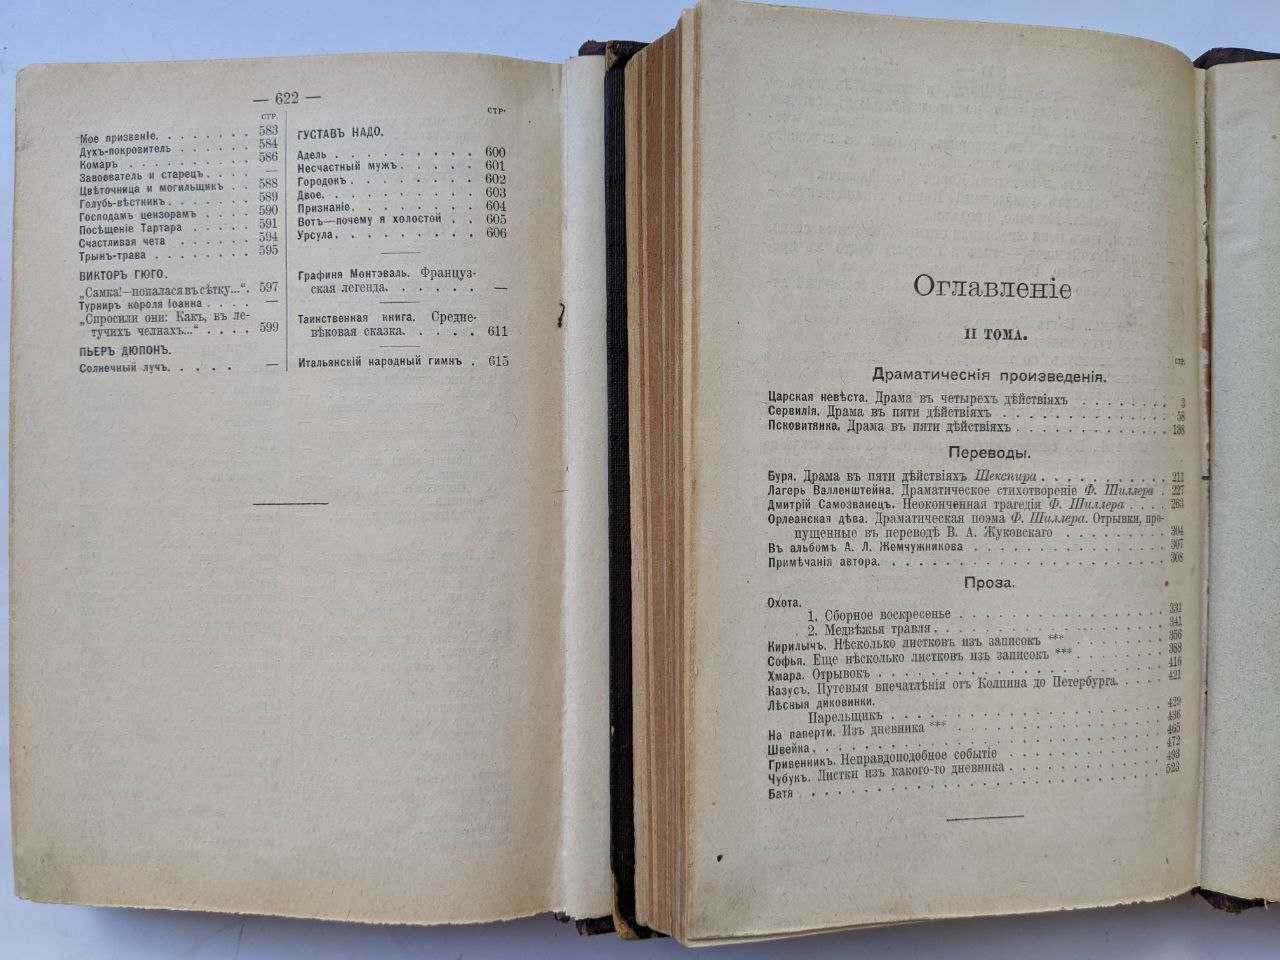 Л.А.Мея Полное собрание сочинений в 2 томах 1911 г. Антикварные книги